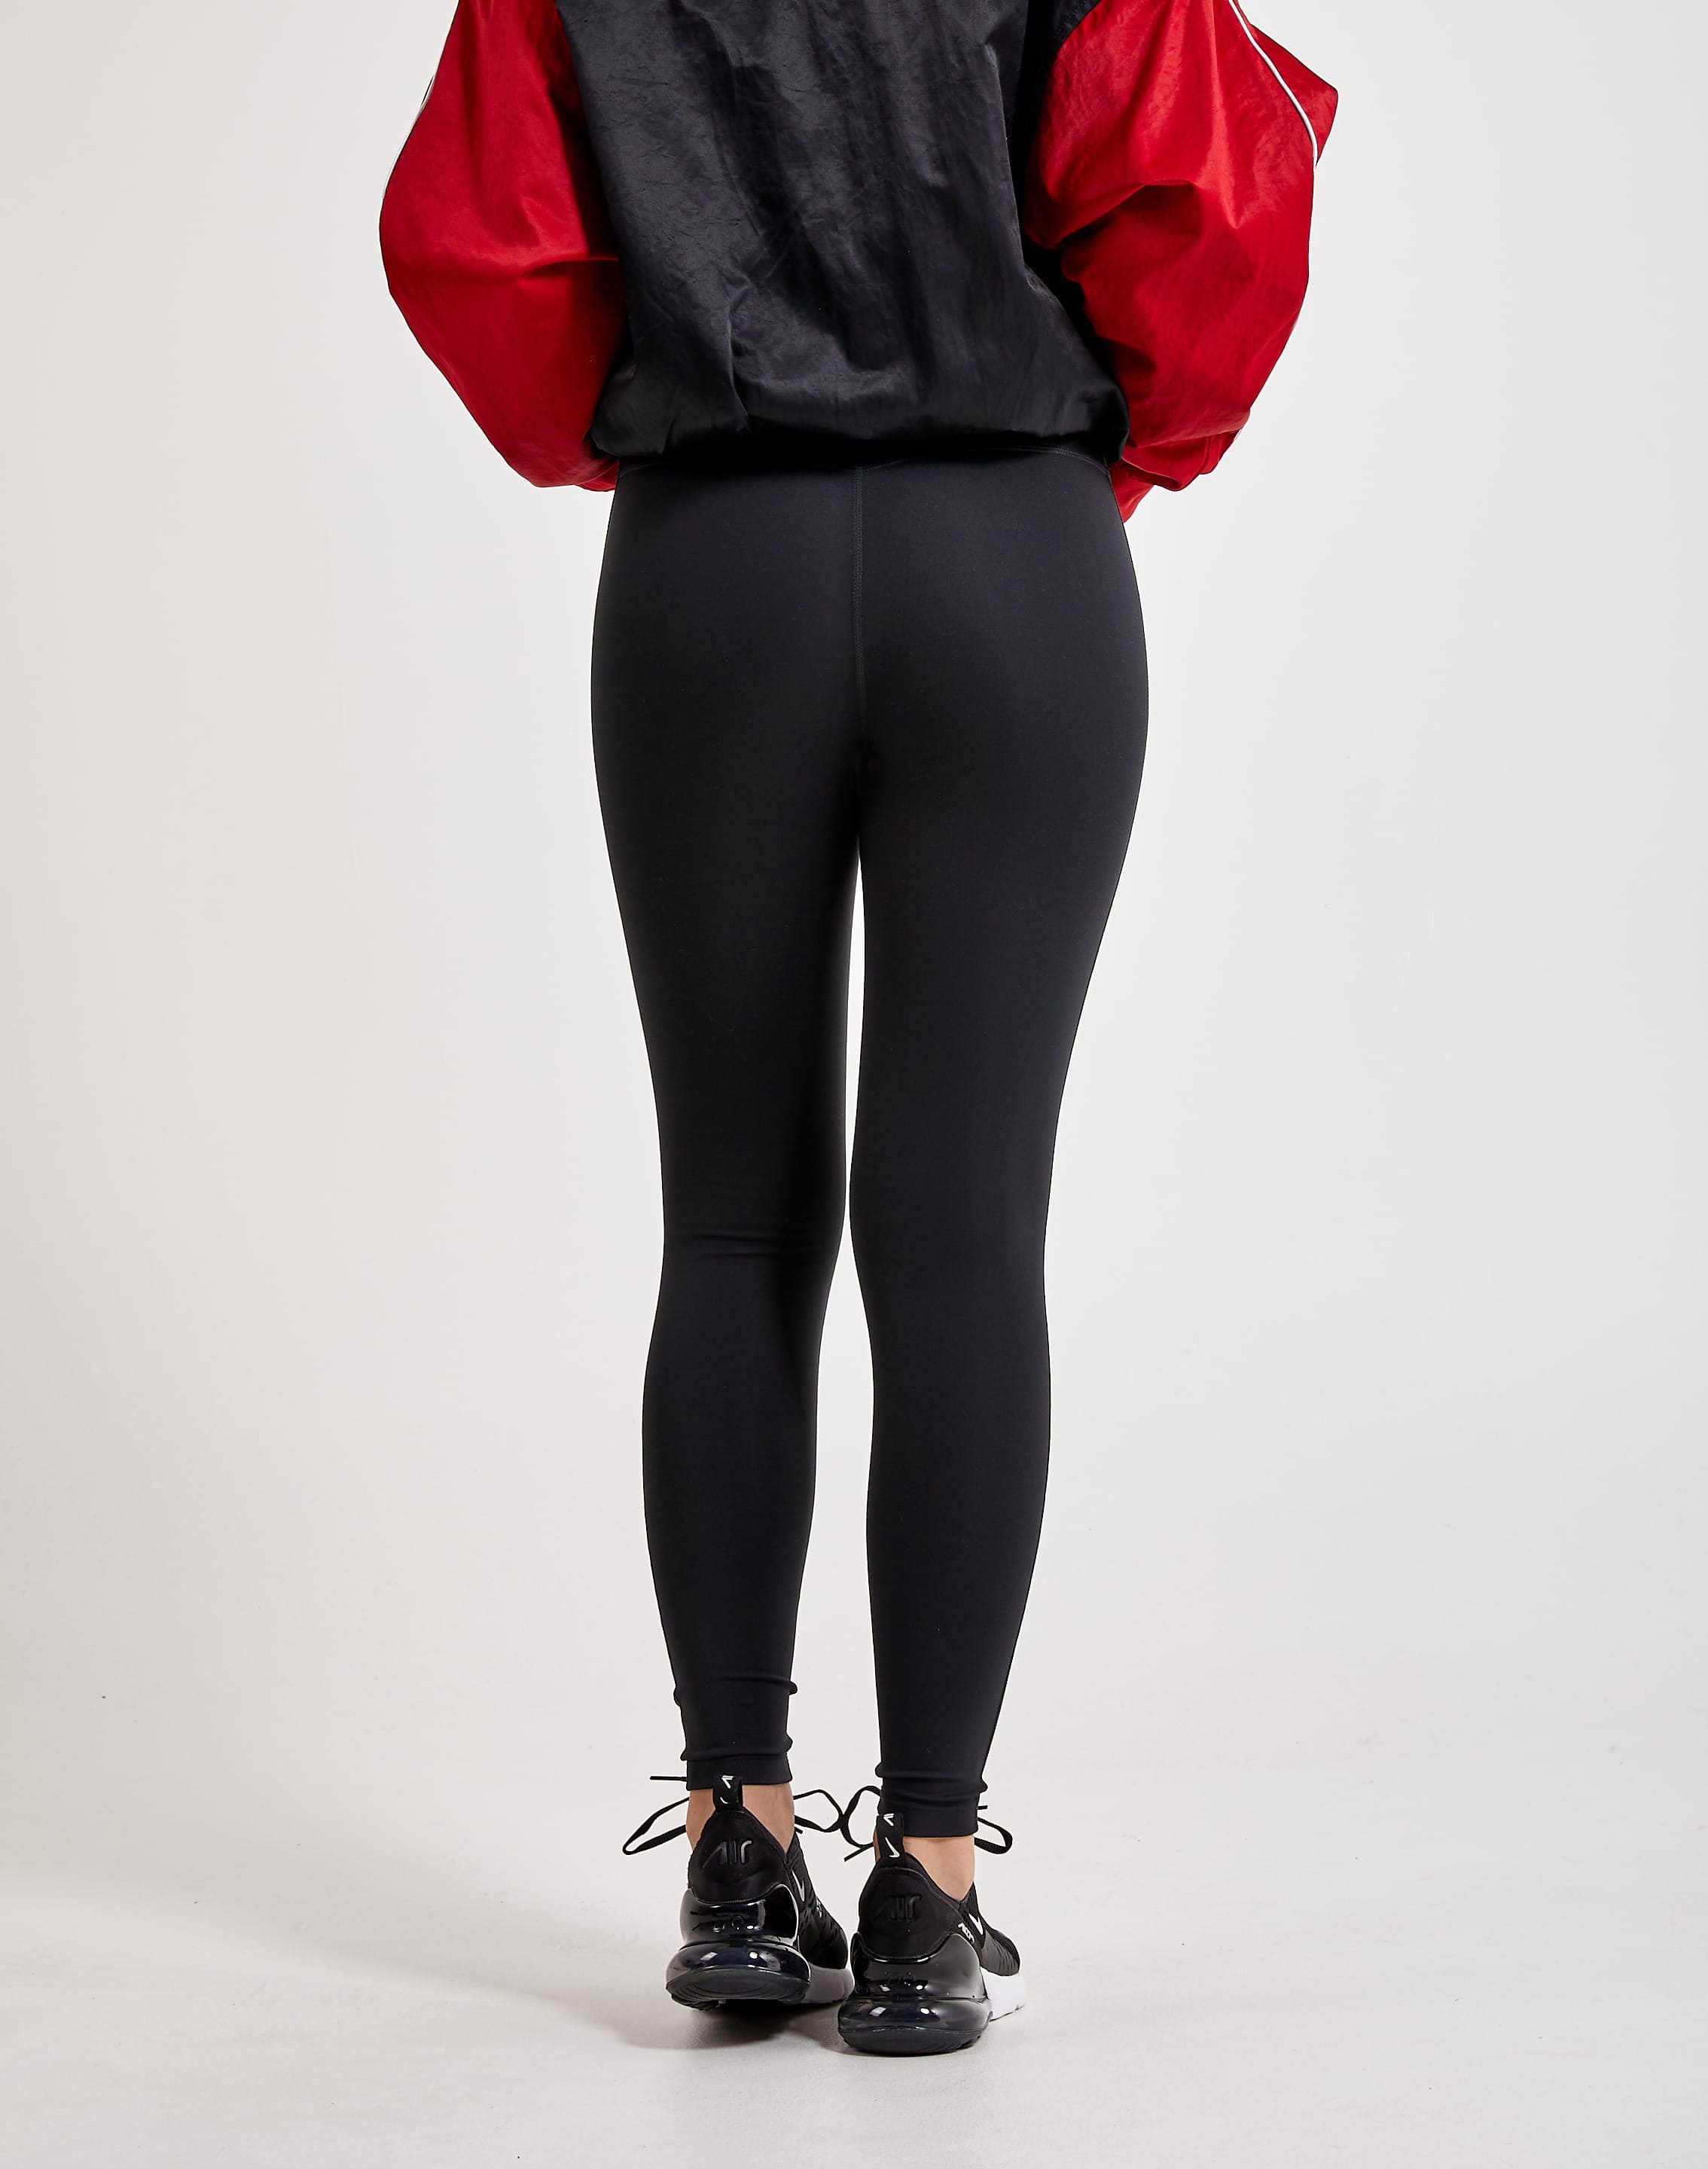 Legging avec logo Jordan Sport pour femme